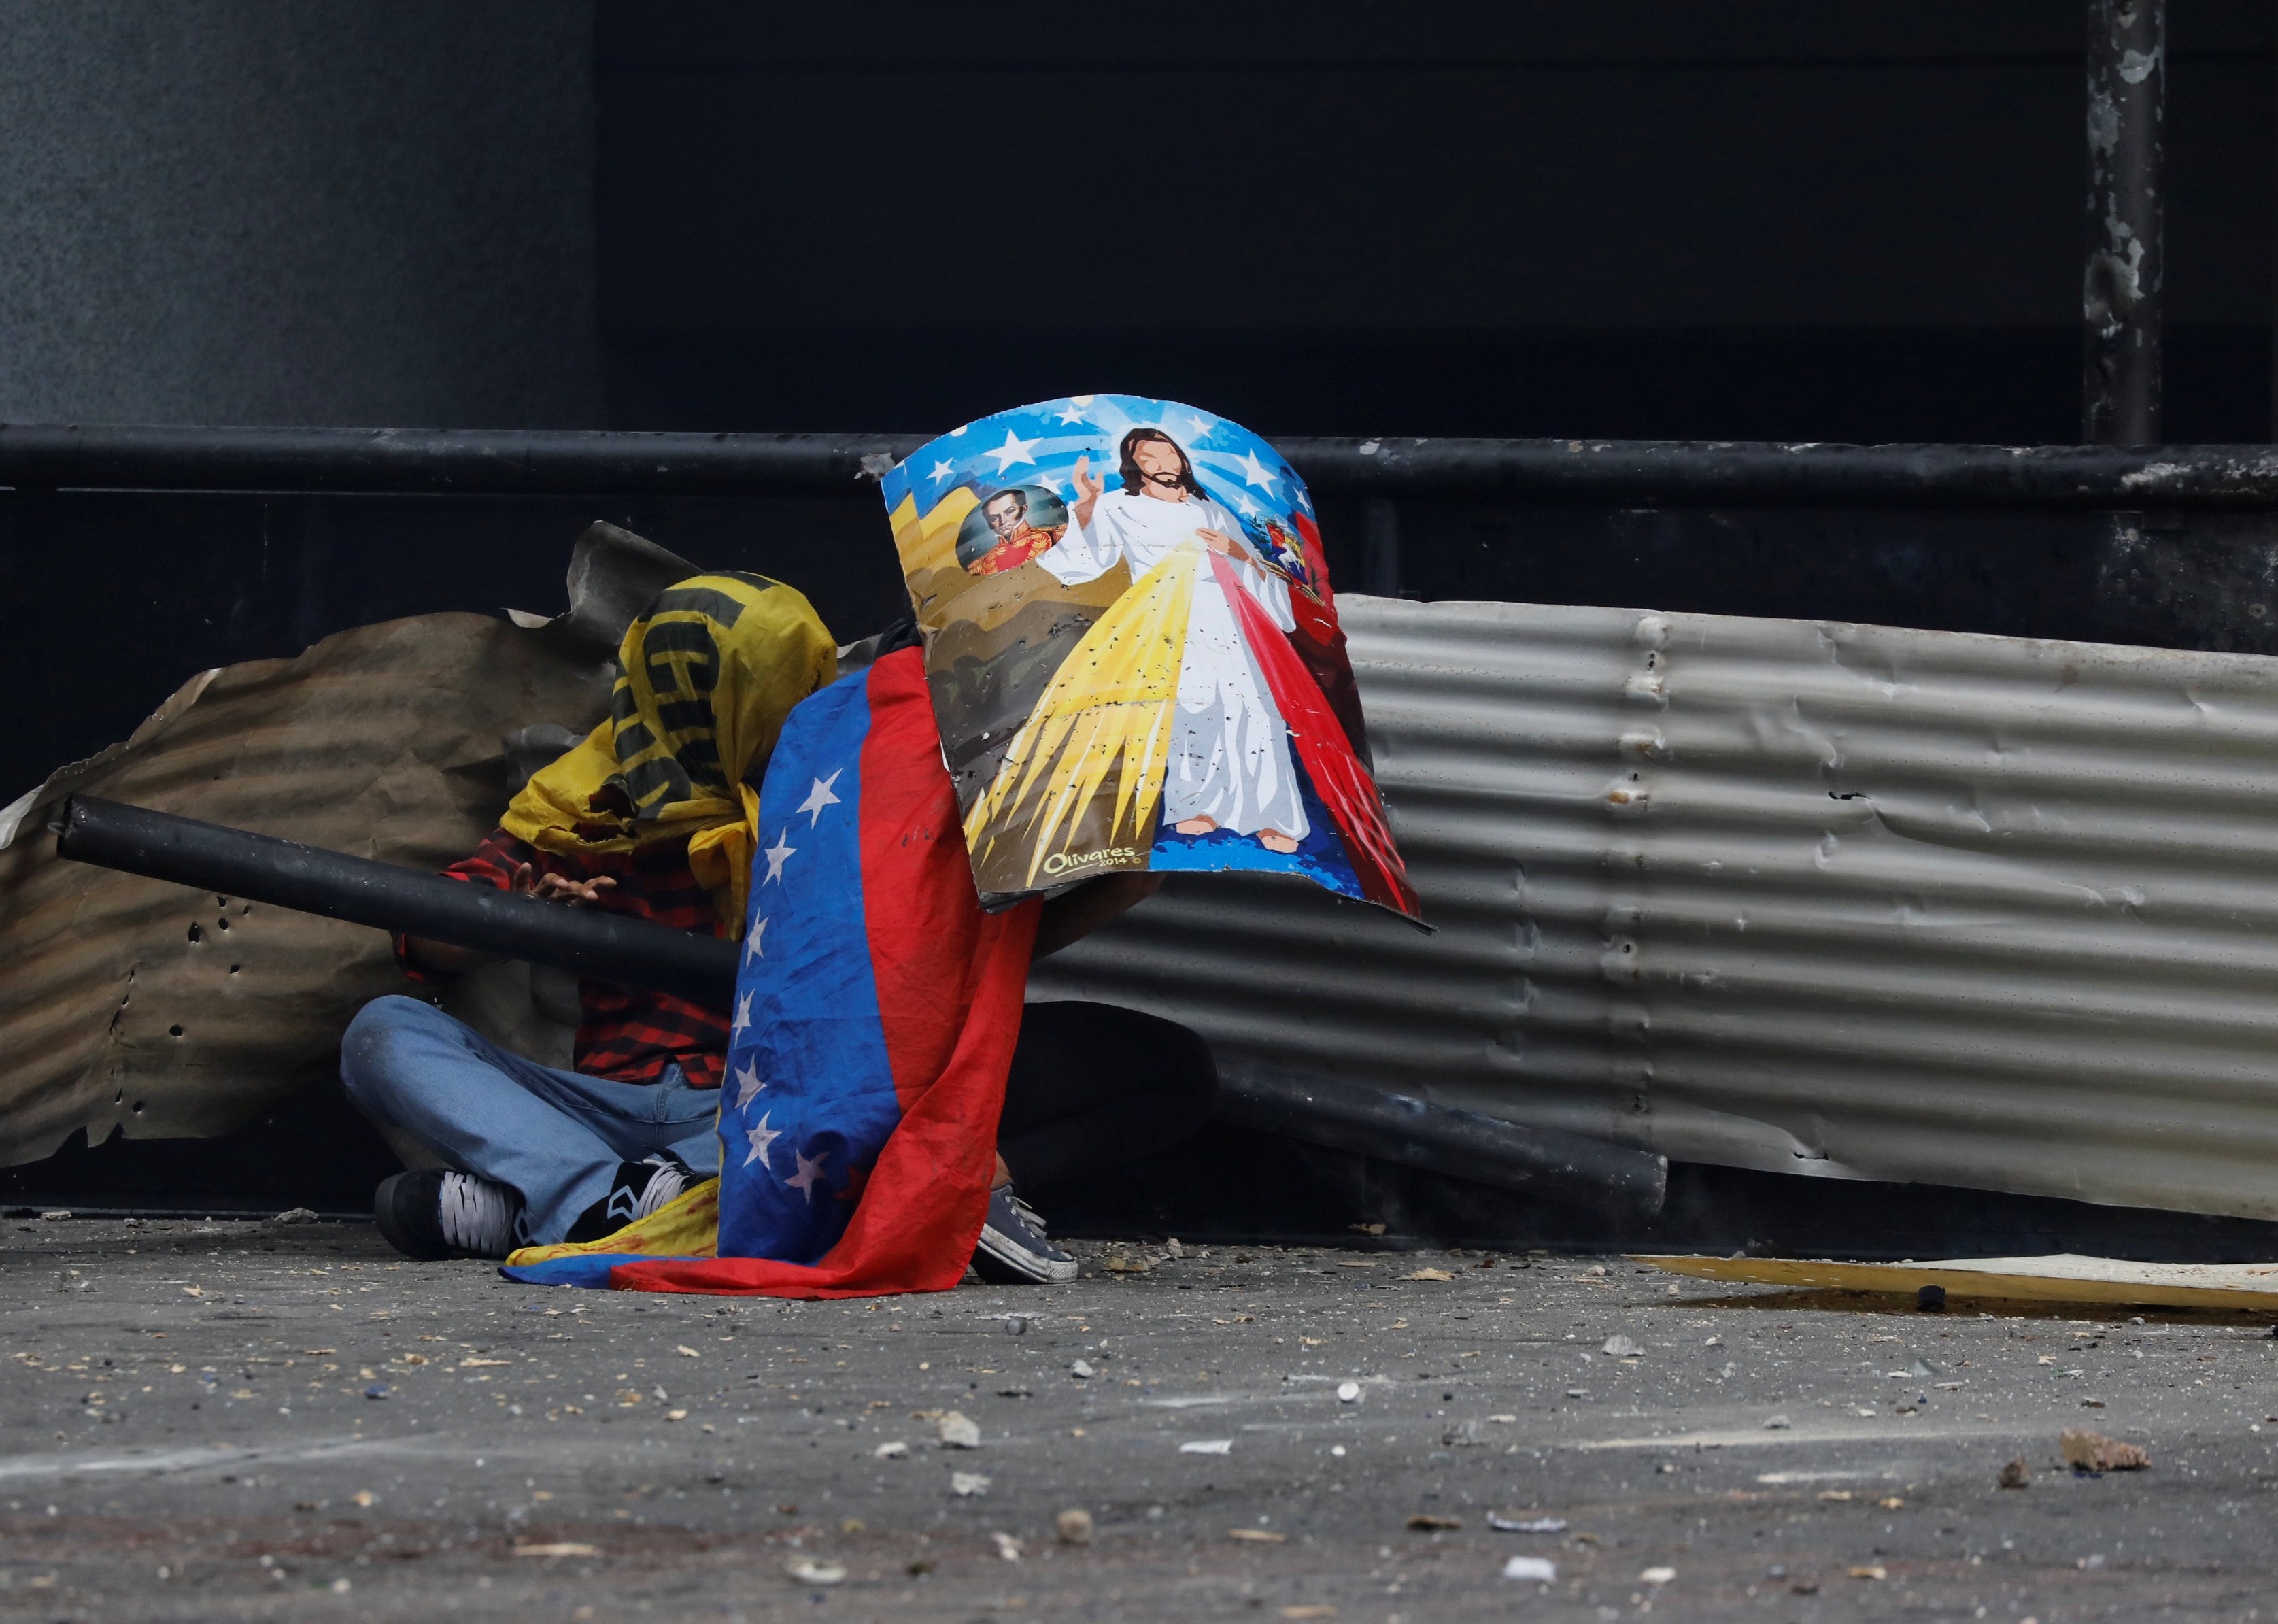 احتماء أحد المتظاهرين من طلقات الشرطة الفنزويلية